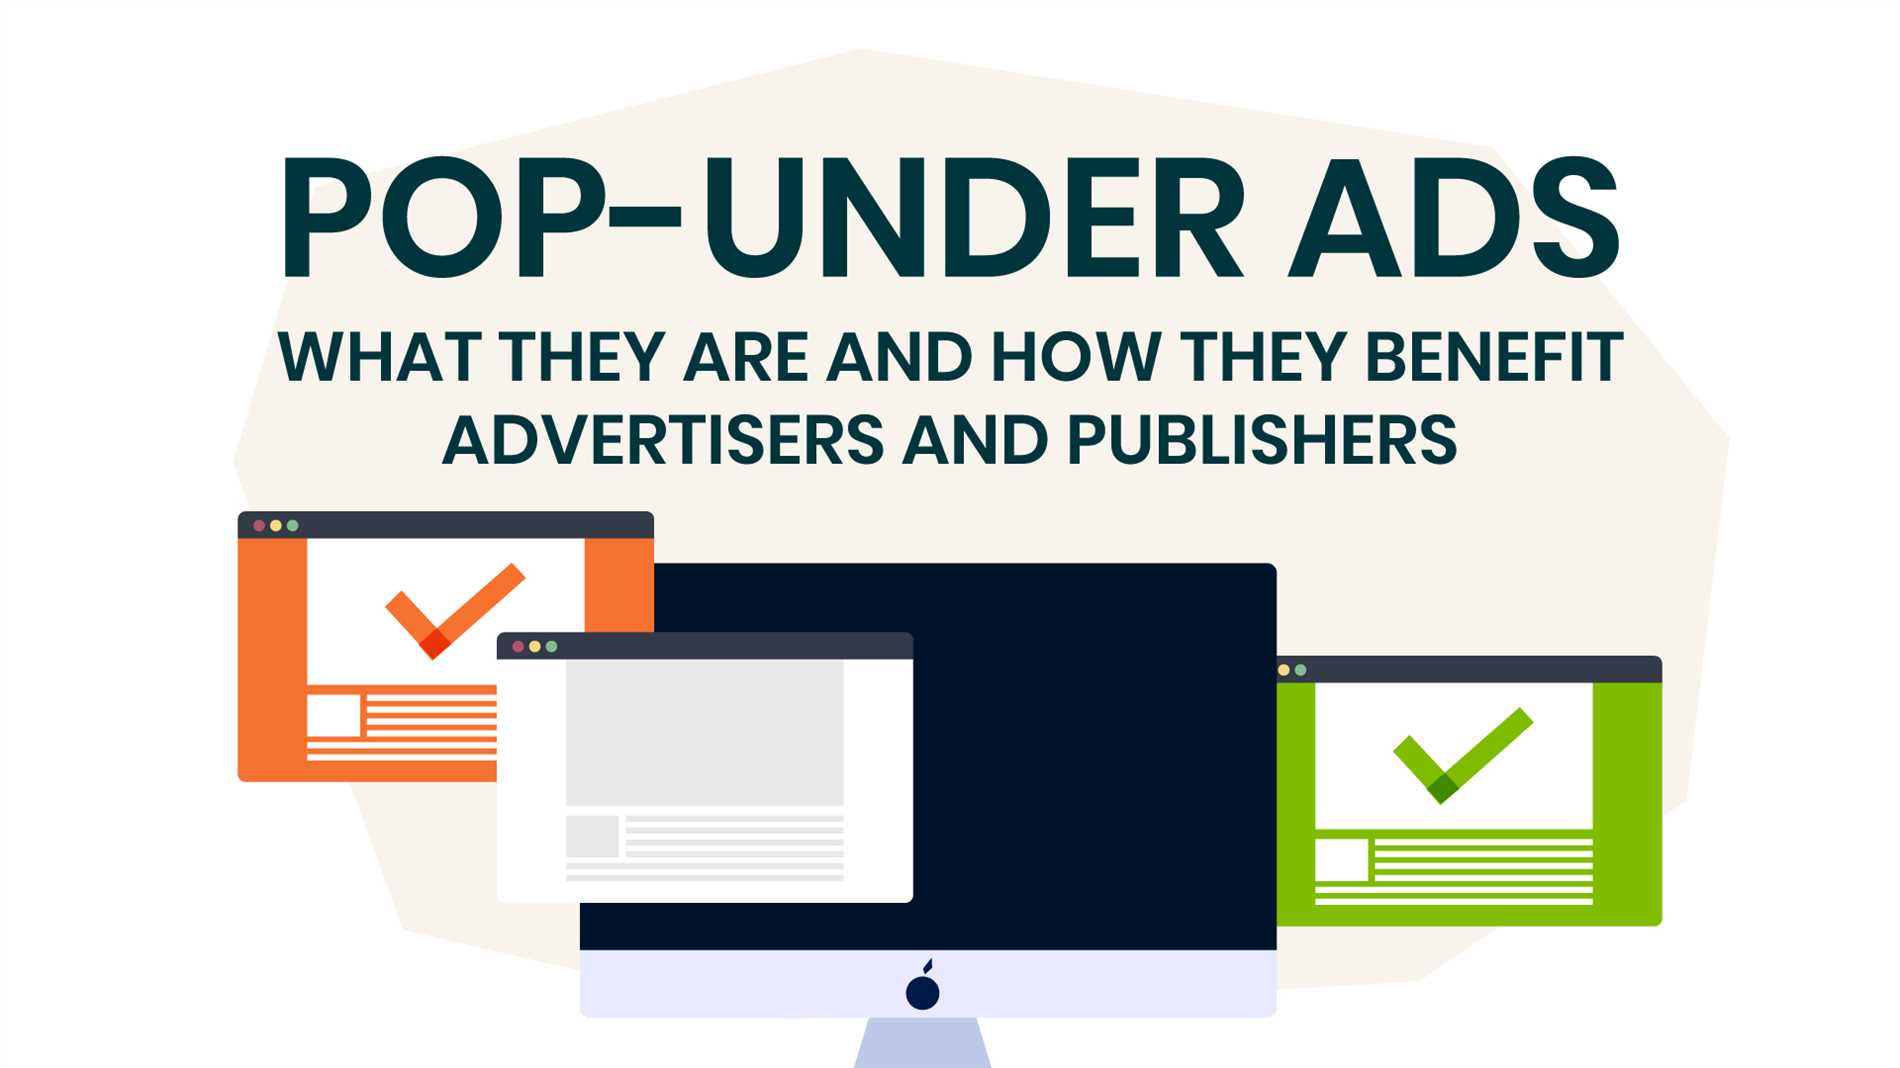 Compre anúncios Pop-under – Aumente o tráfego do seu site com publicidade eficaz.